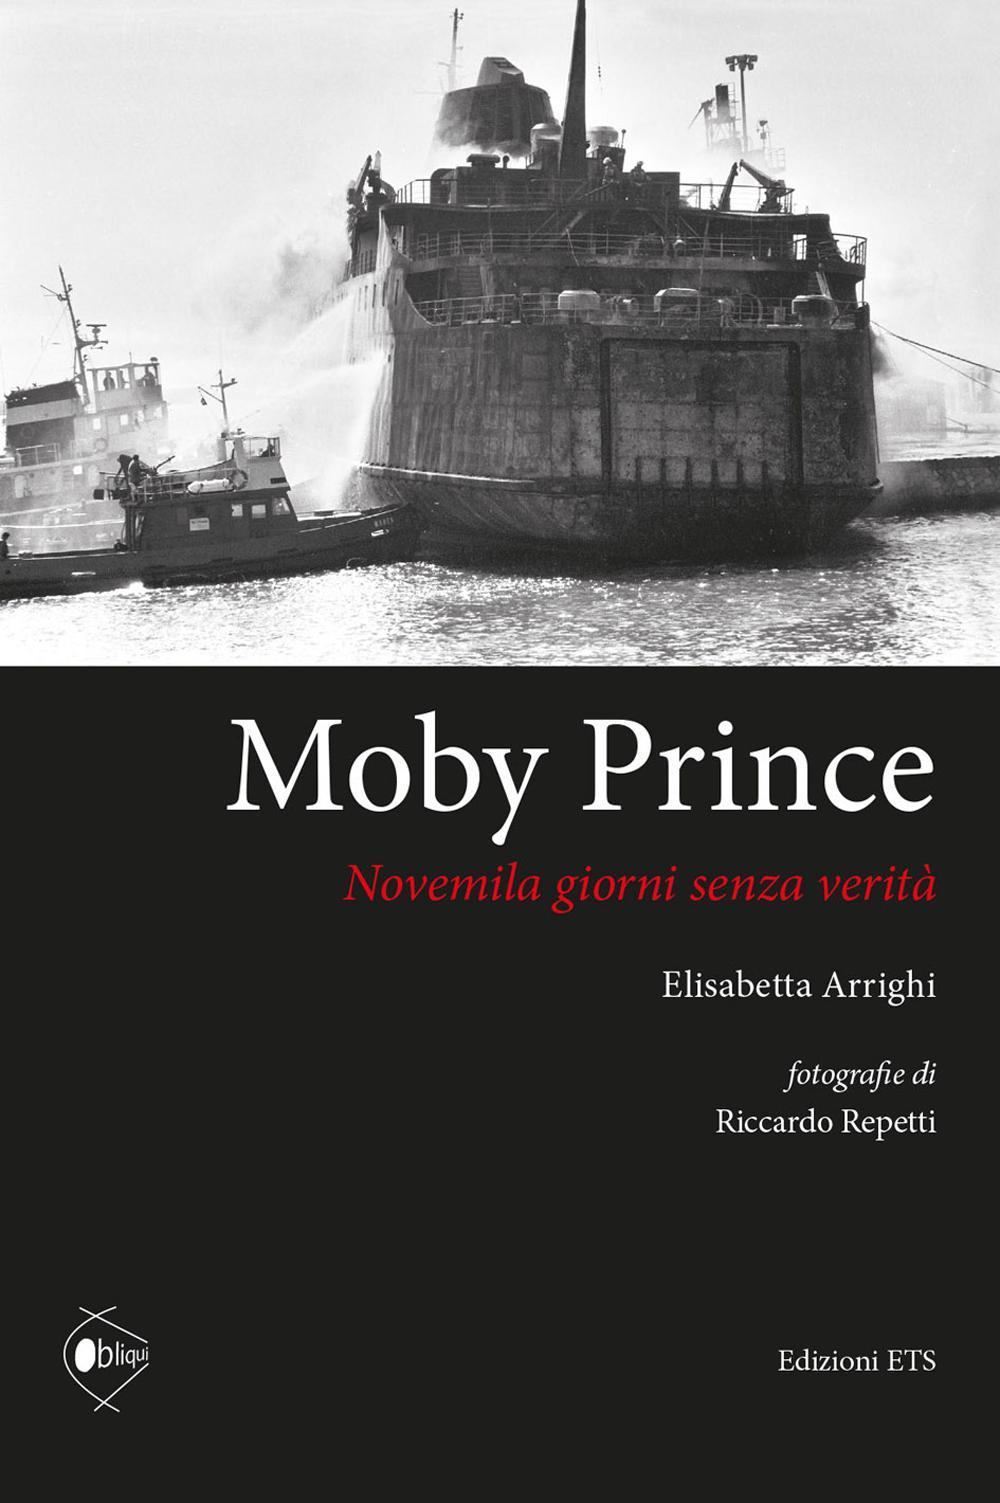 Image of Moby Prince novemila giorni senza verità